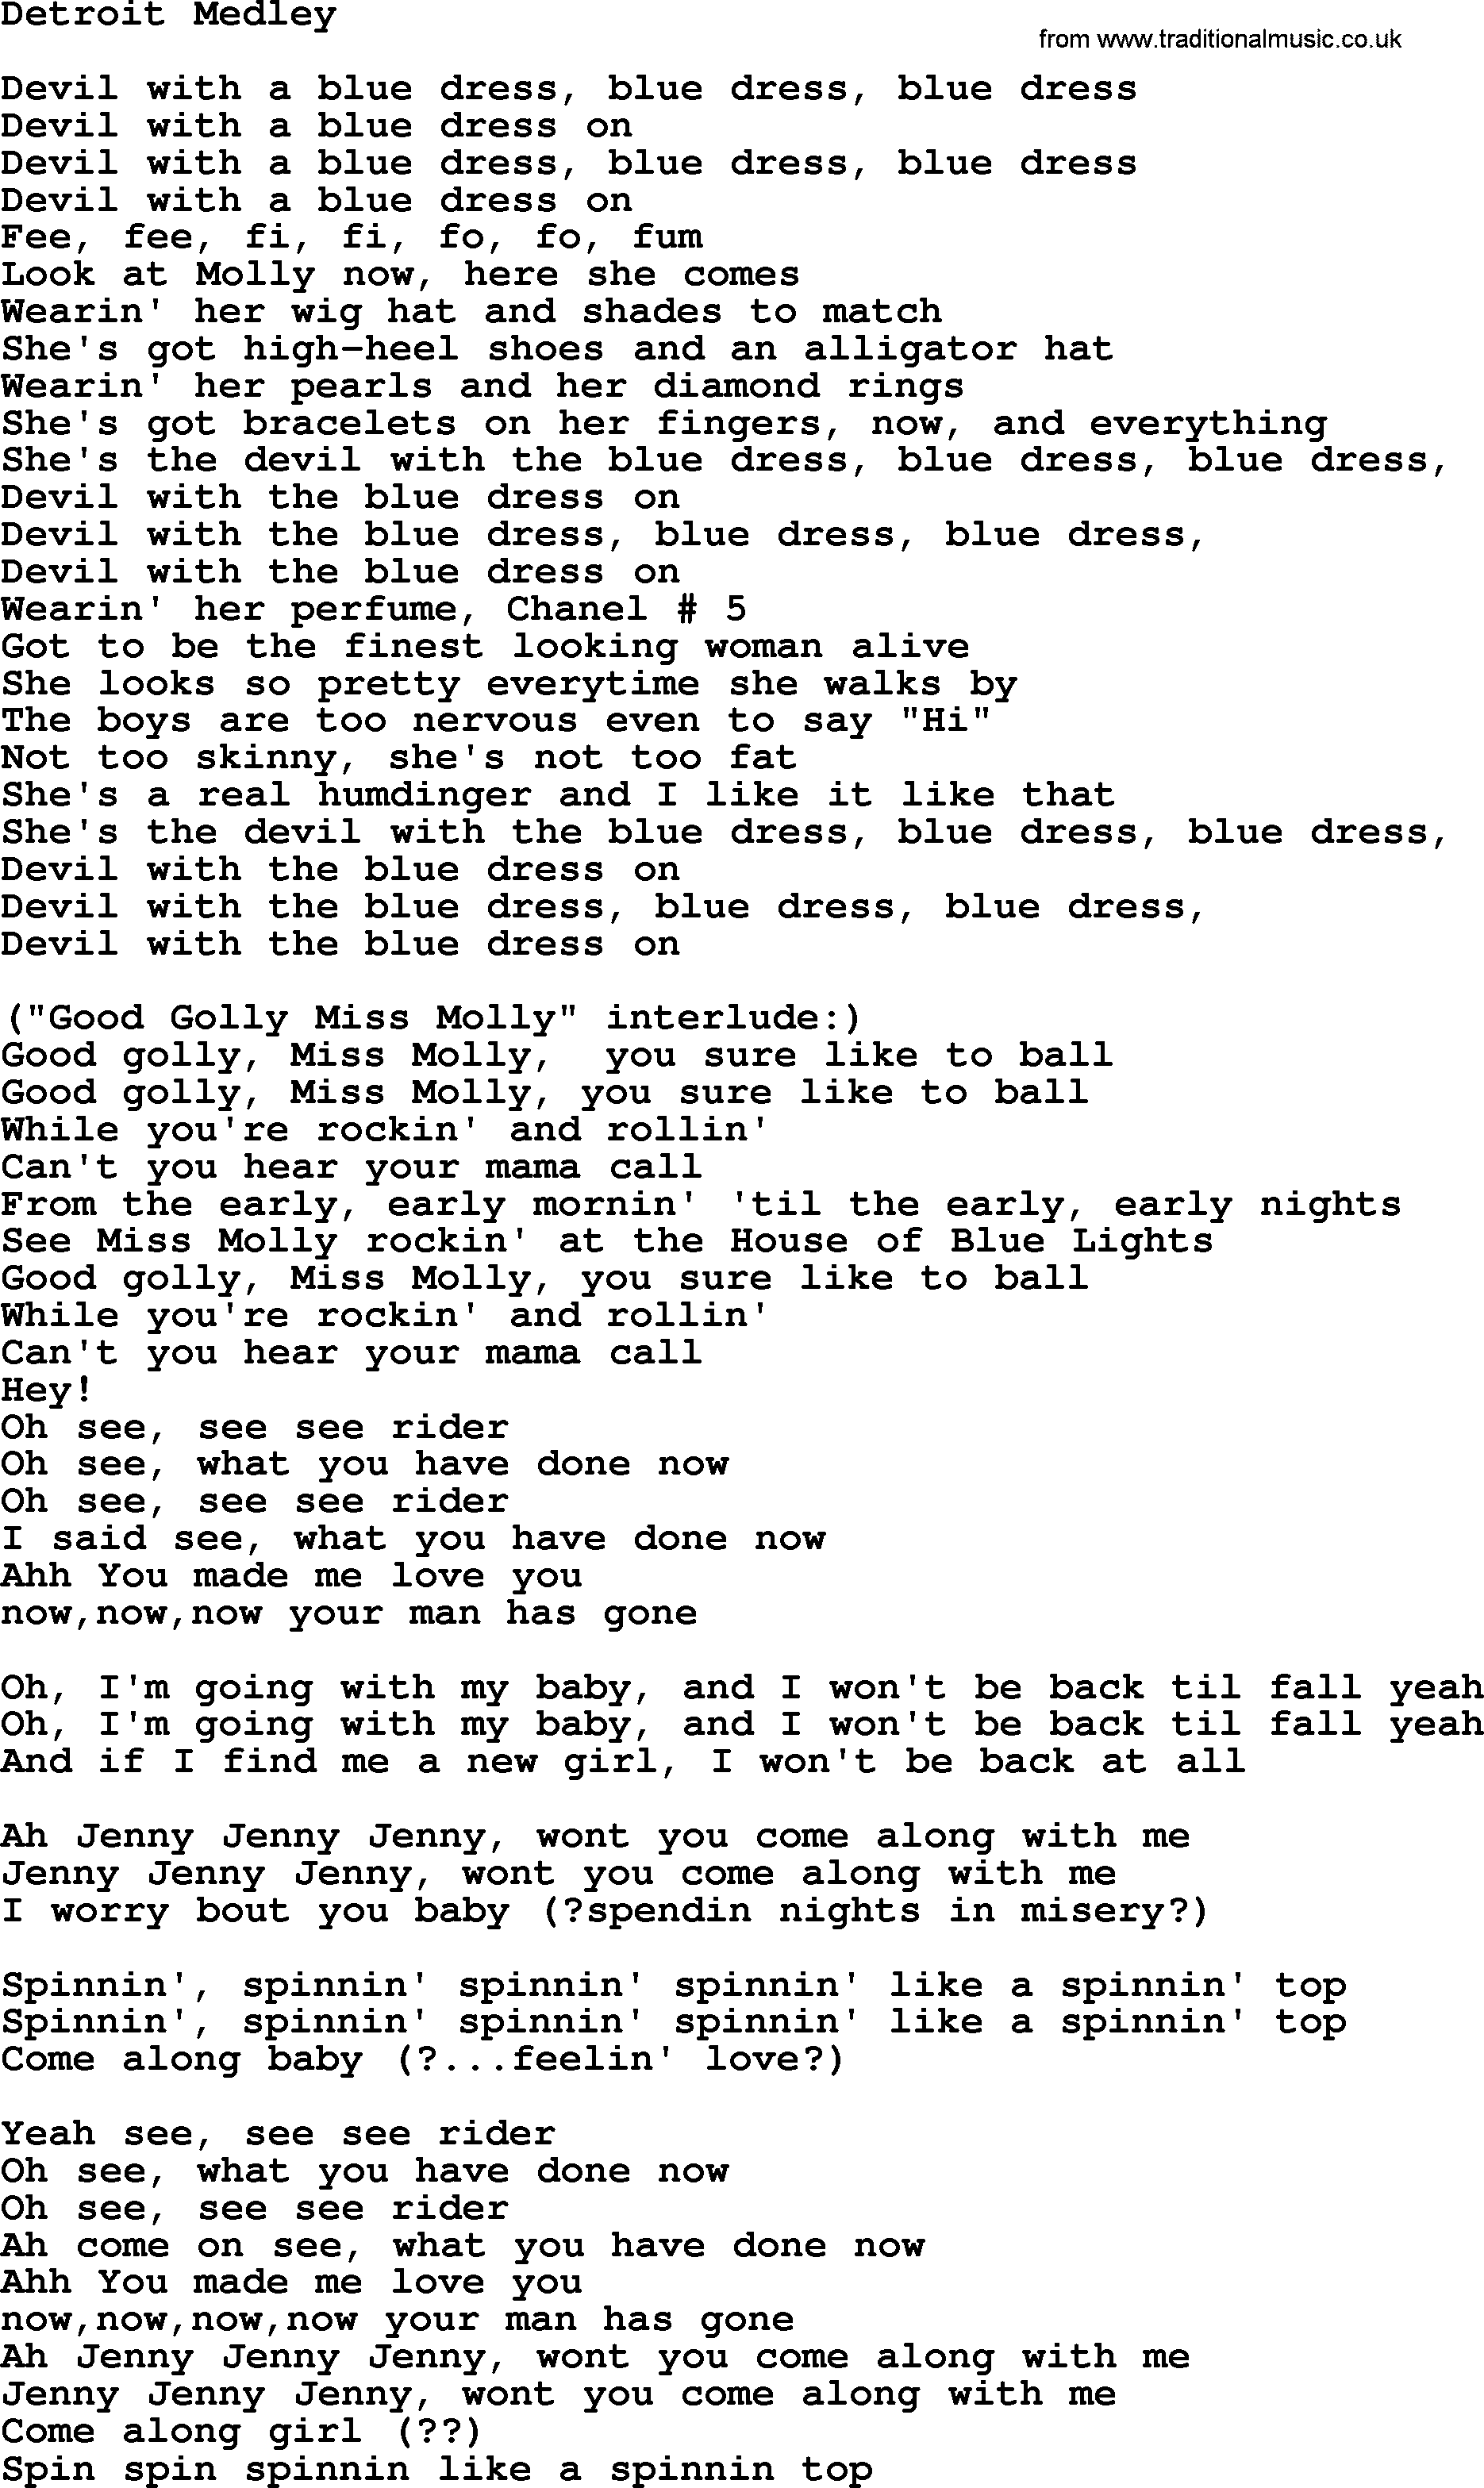 Bruce Springsteen song: Detroit Medley lyrics